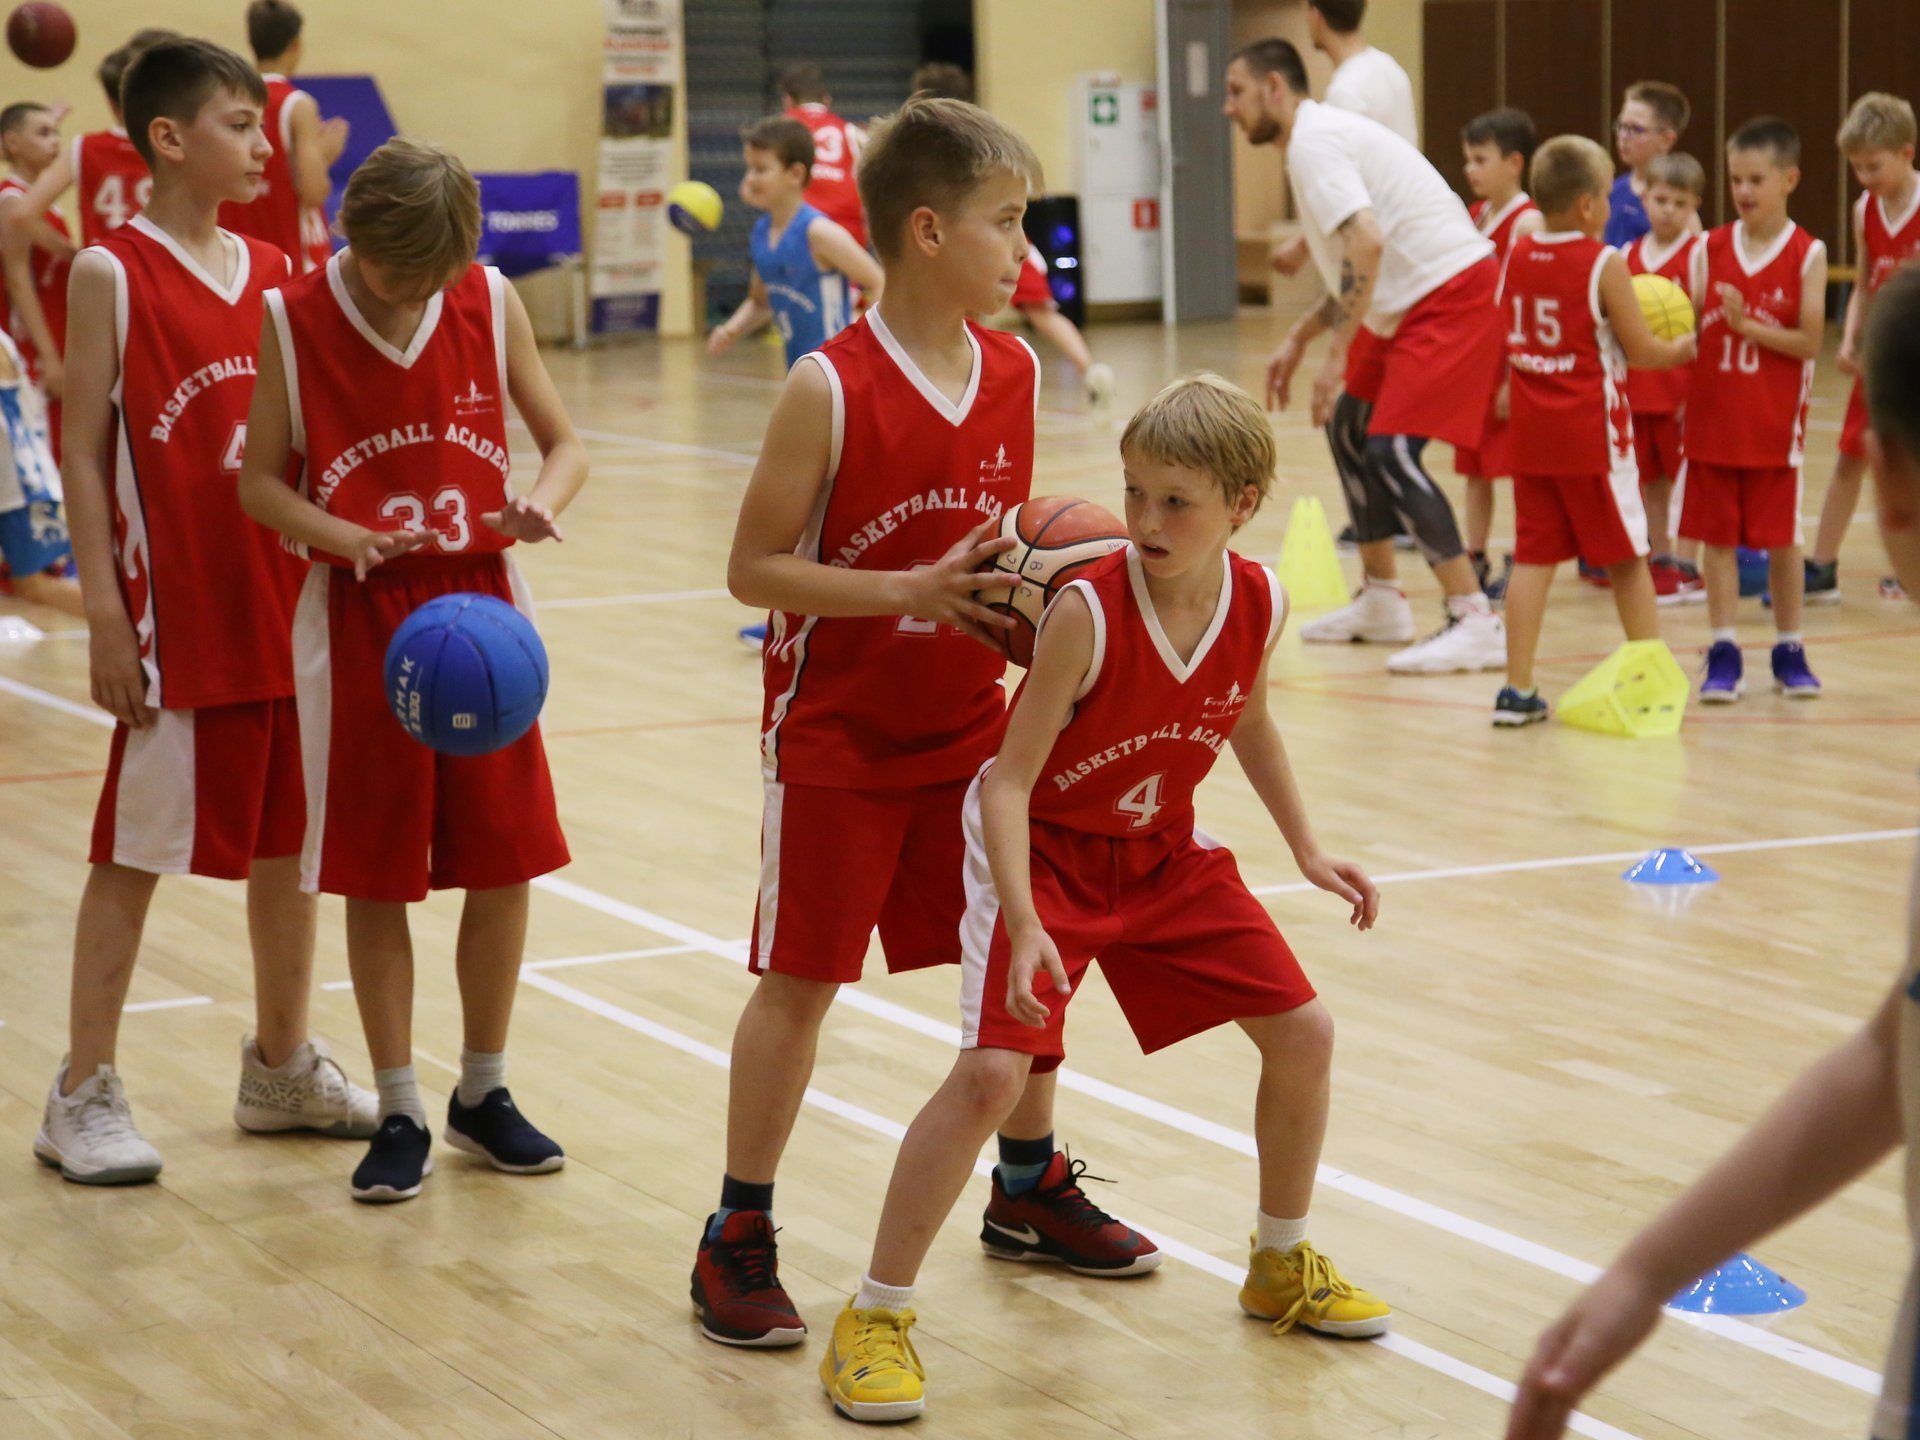 «Первый Шаг» – Зимний баскетбольный лагерь в Подмосковье, фото 4